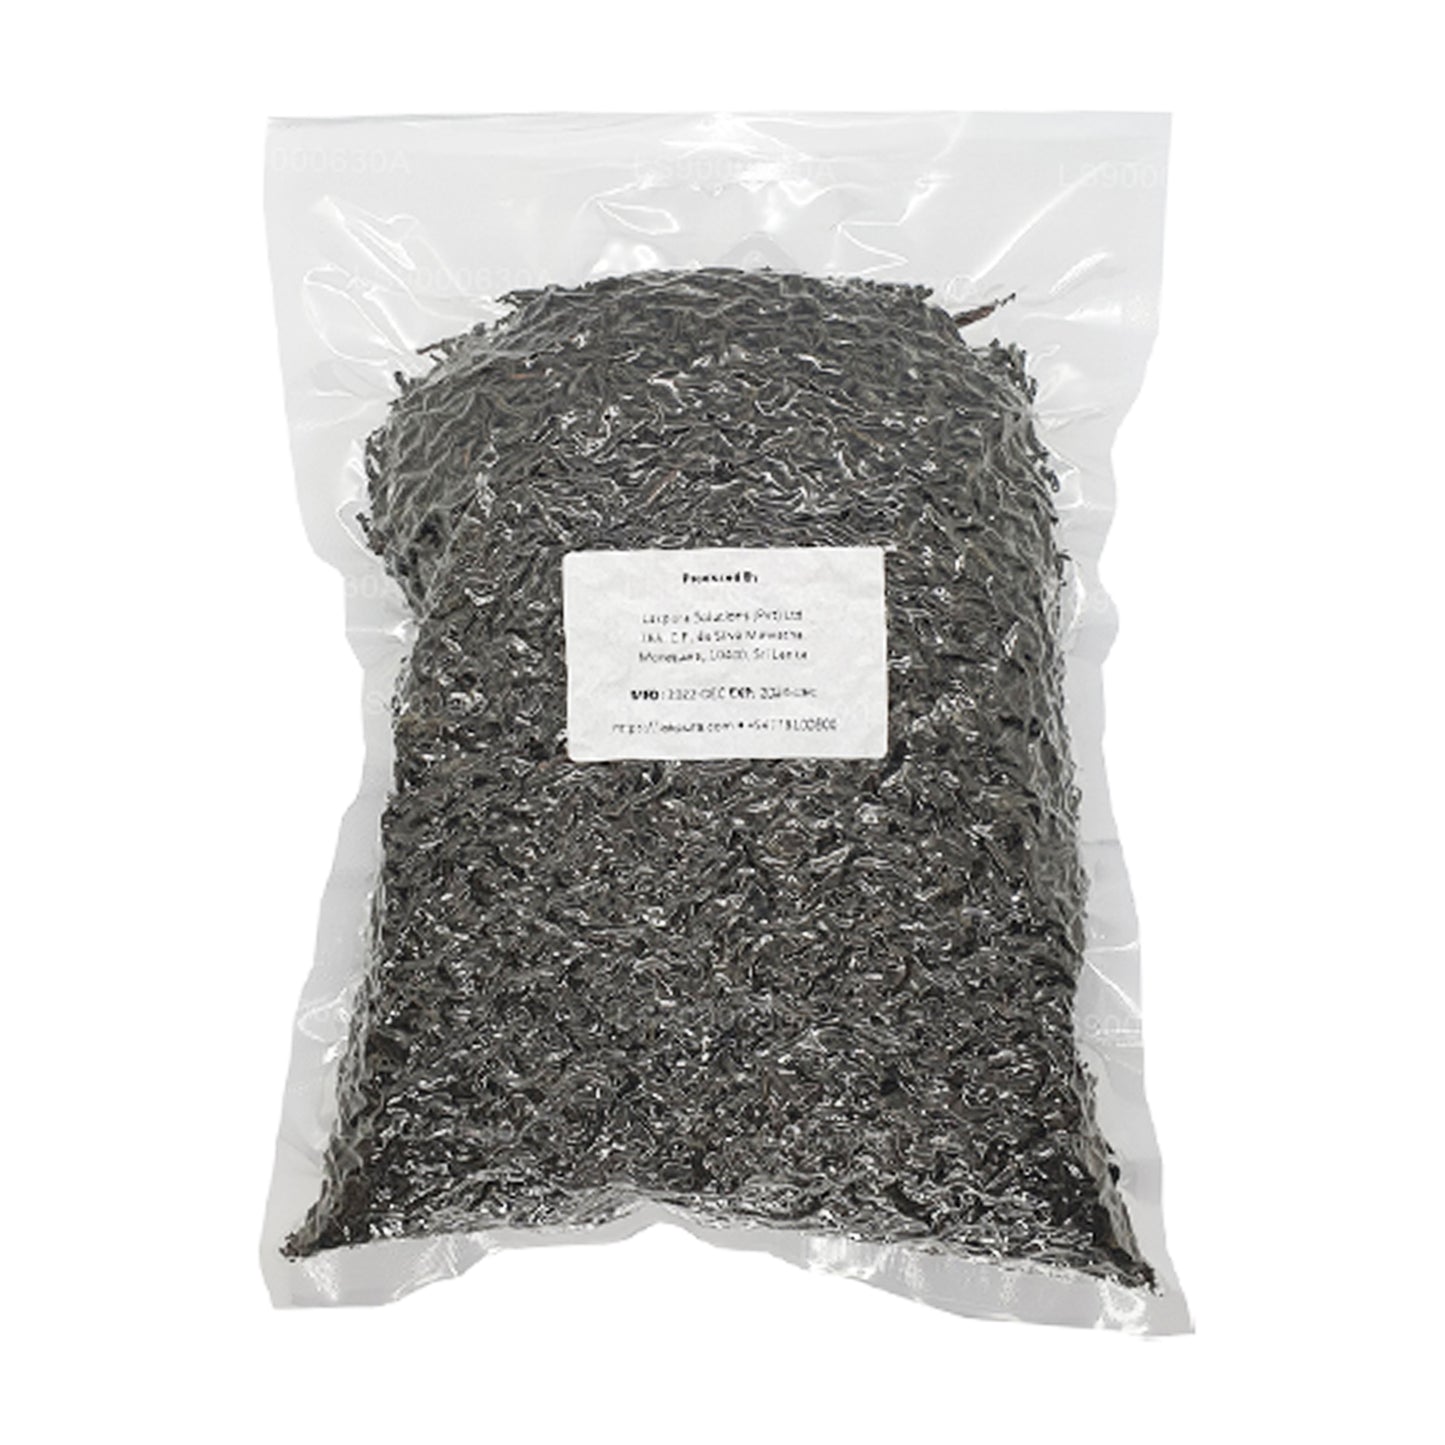 Lakpura Single Region (Ruhuna) Ceylon zwarte bladthee van OPA-kwaliteit (500 g)